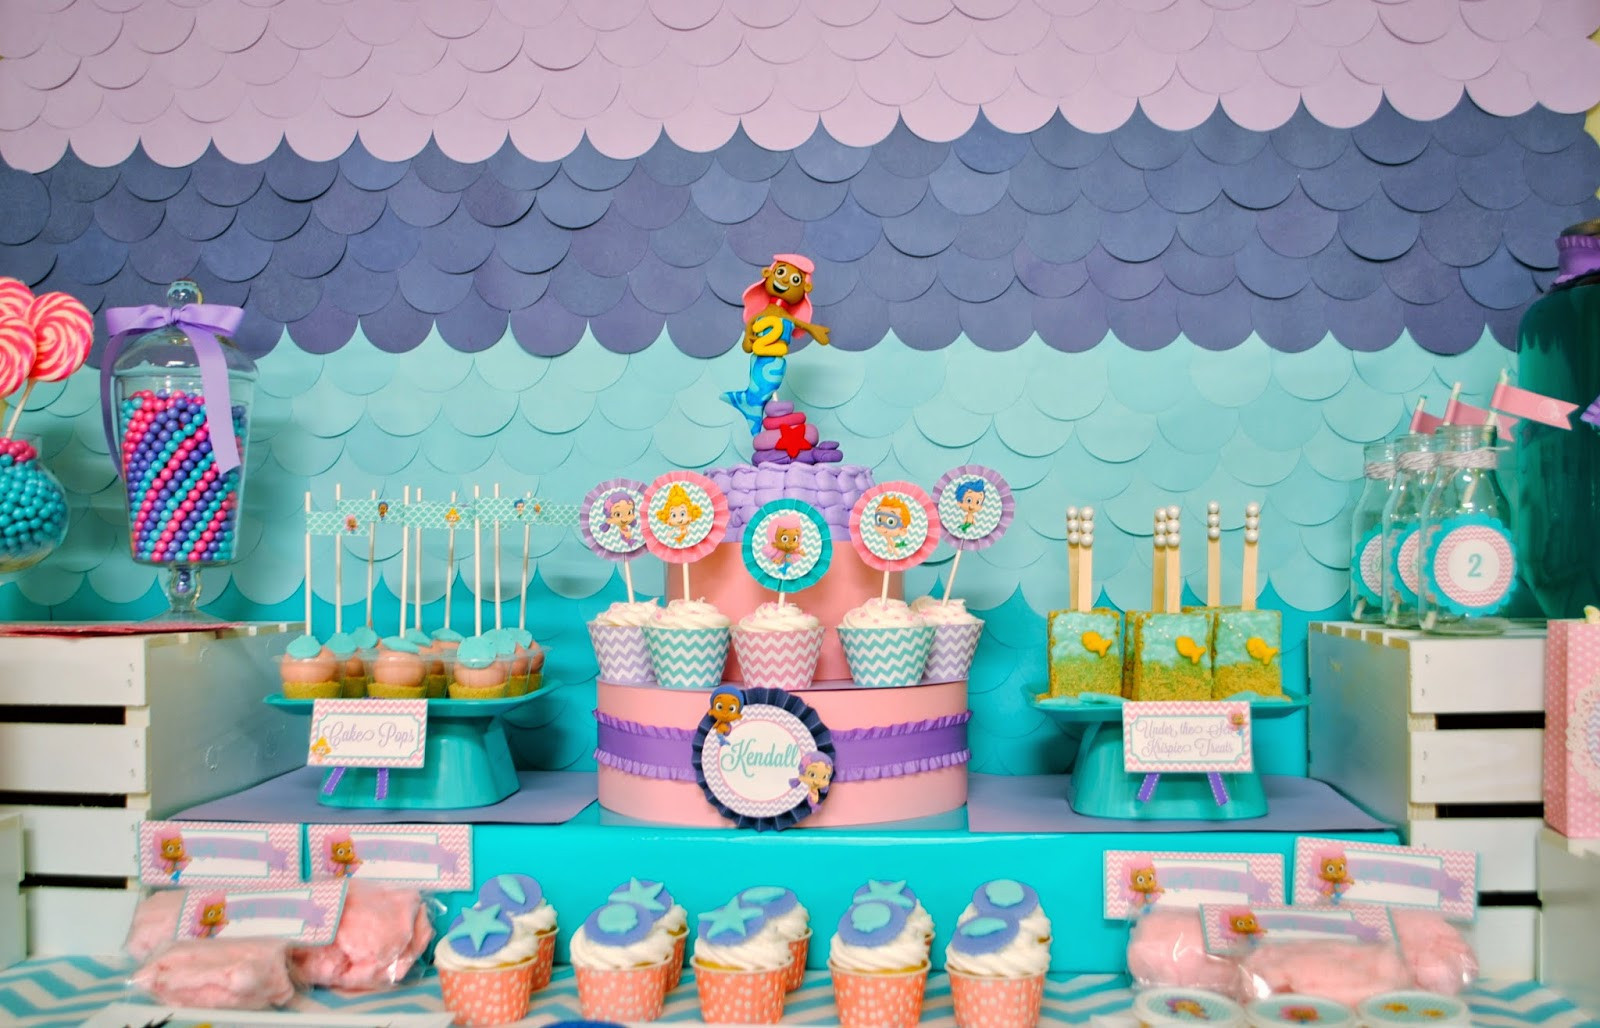 Bubble Guppies Birthday Party Ideas
 Karo s Fun Land Bubble Guppies 2nd Birthday Party